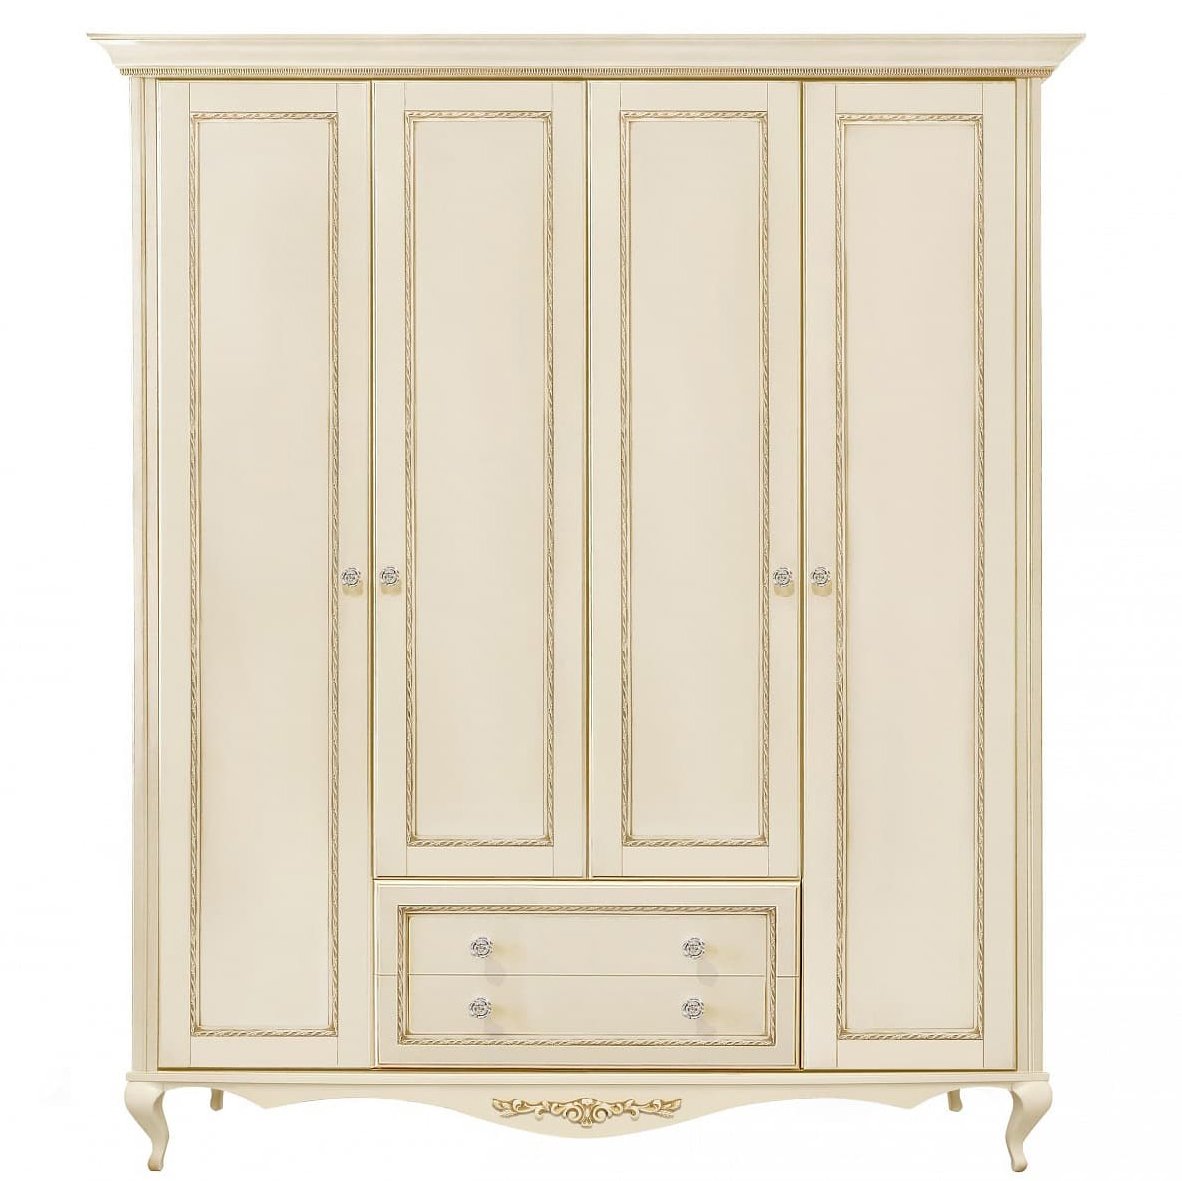 Шкаф платяной Timber Неаполь, 4-х дверный 204x65x227 см цвет: ваниль с золотом (T-524Д)T-524Д